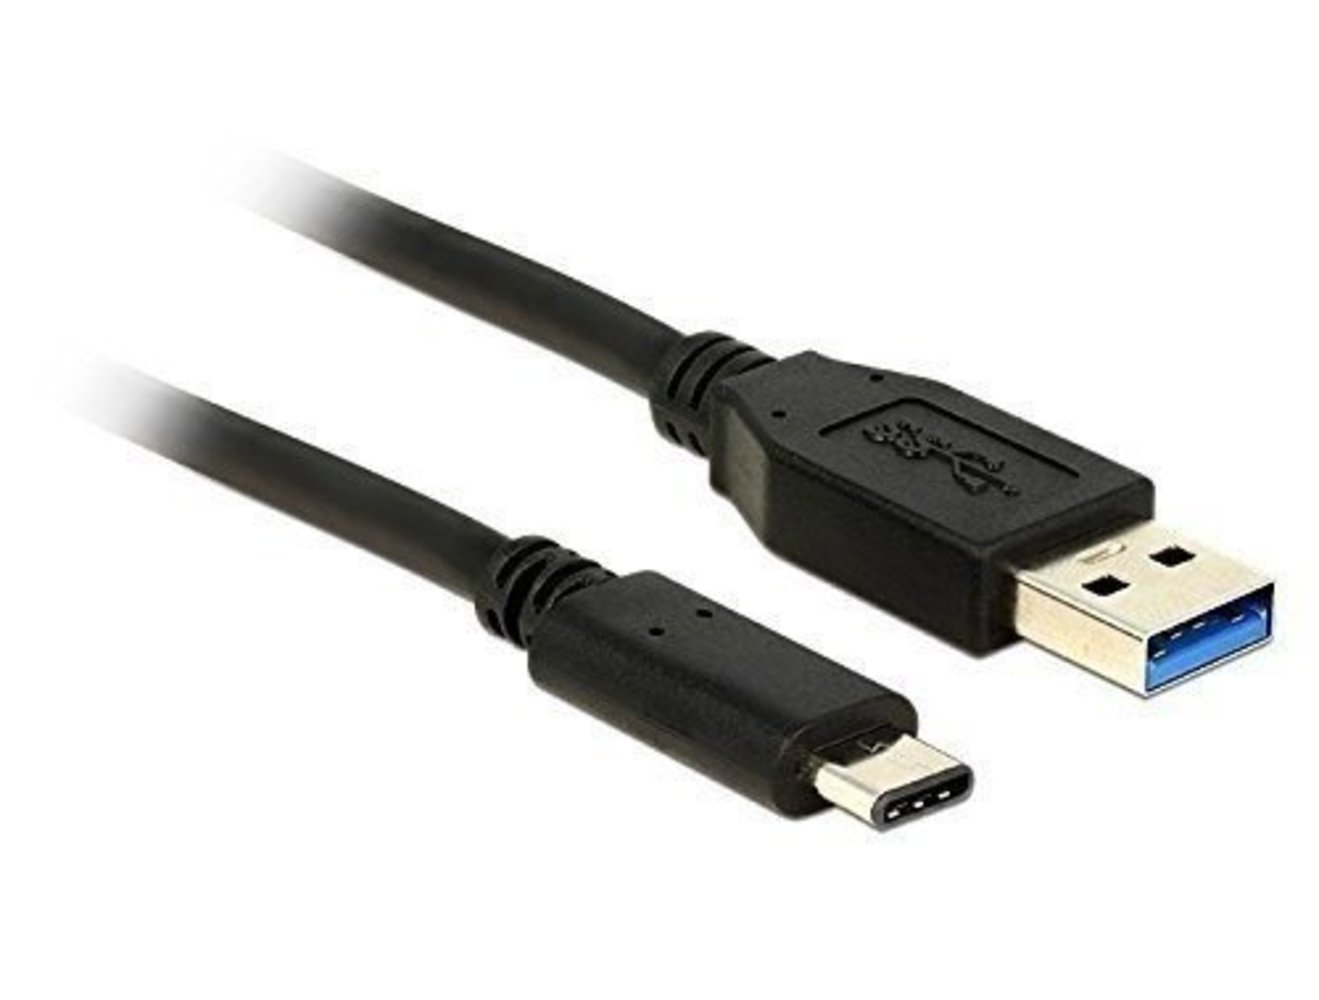 Kabel USB 3.1 Gen 2 USB Typ-A Stecker > USB Type-C Stecker 0.5 m schwarz Delock